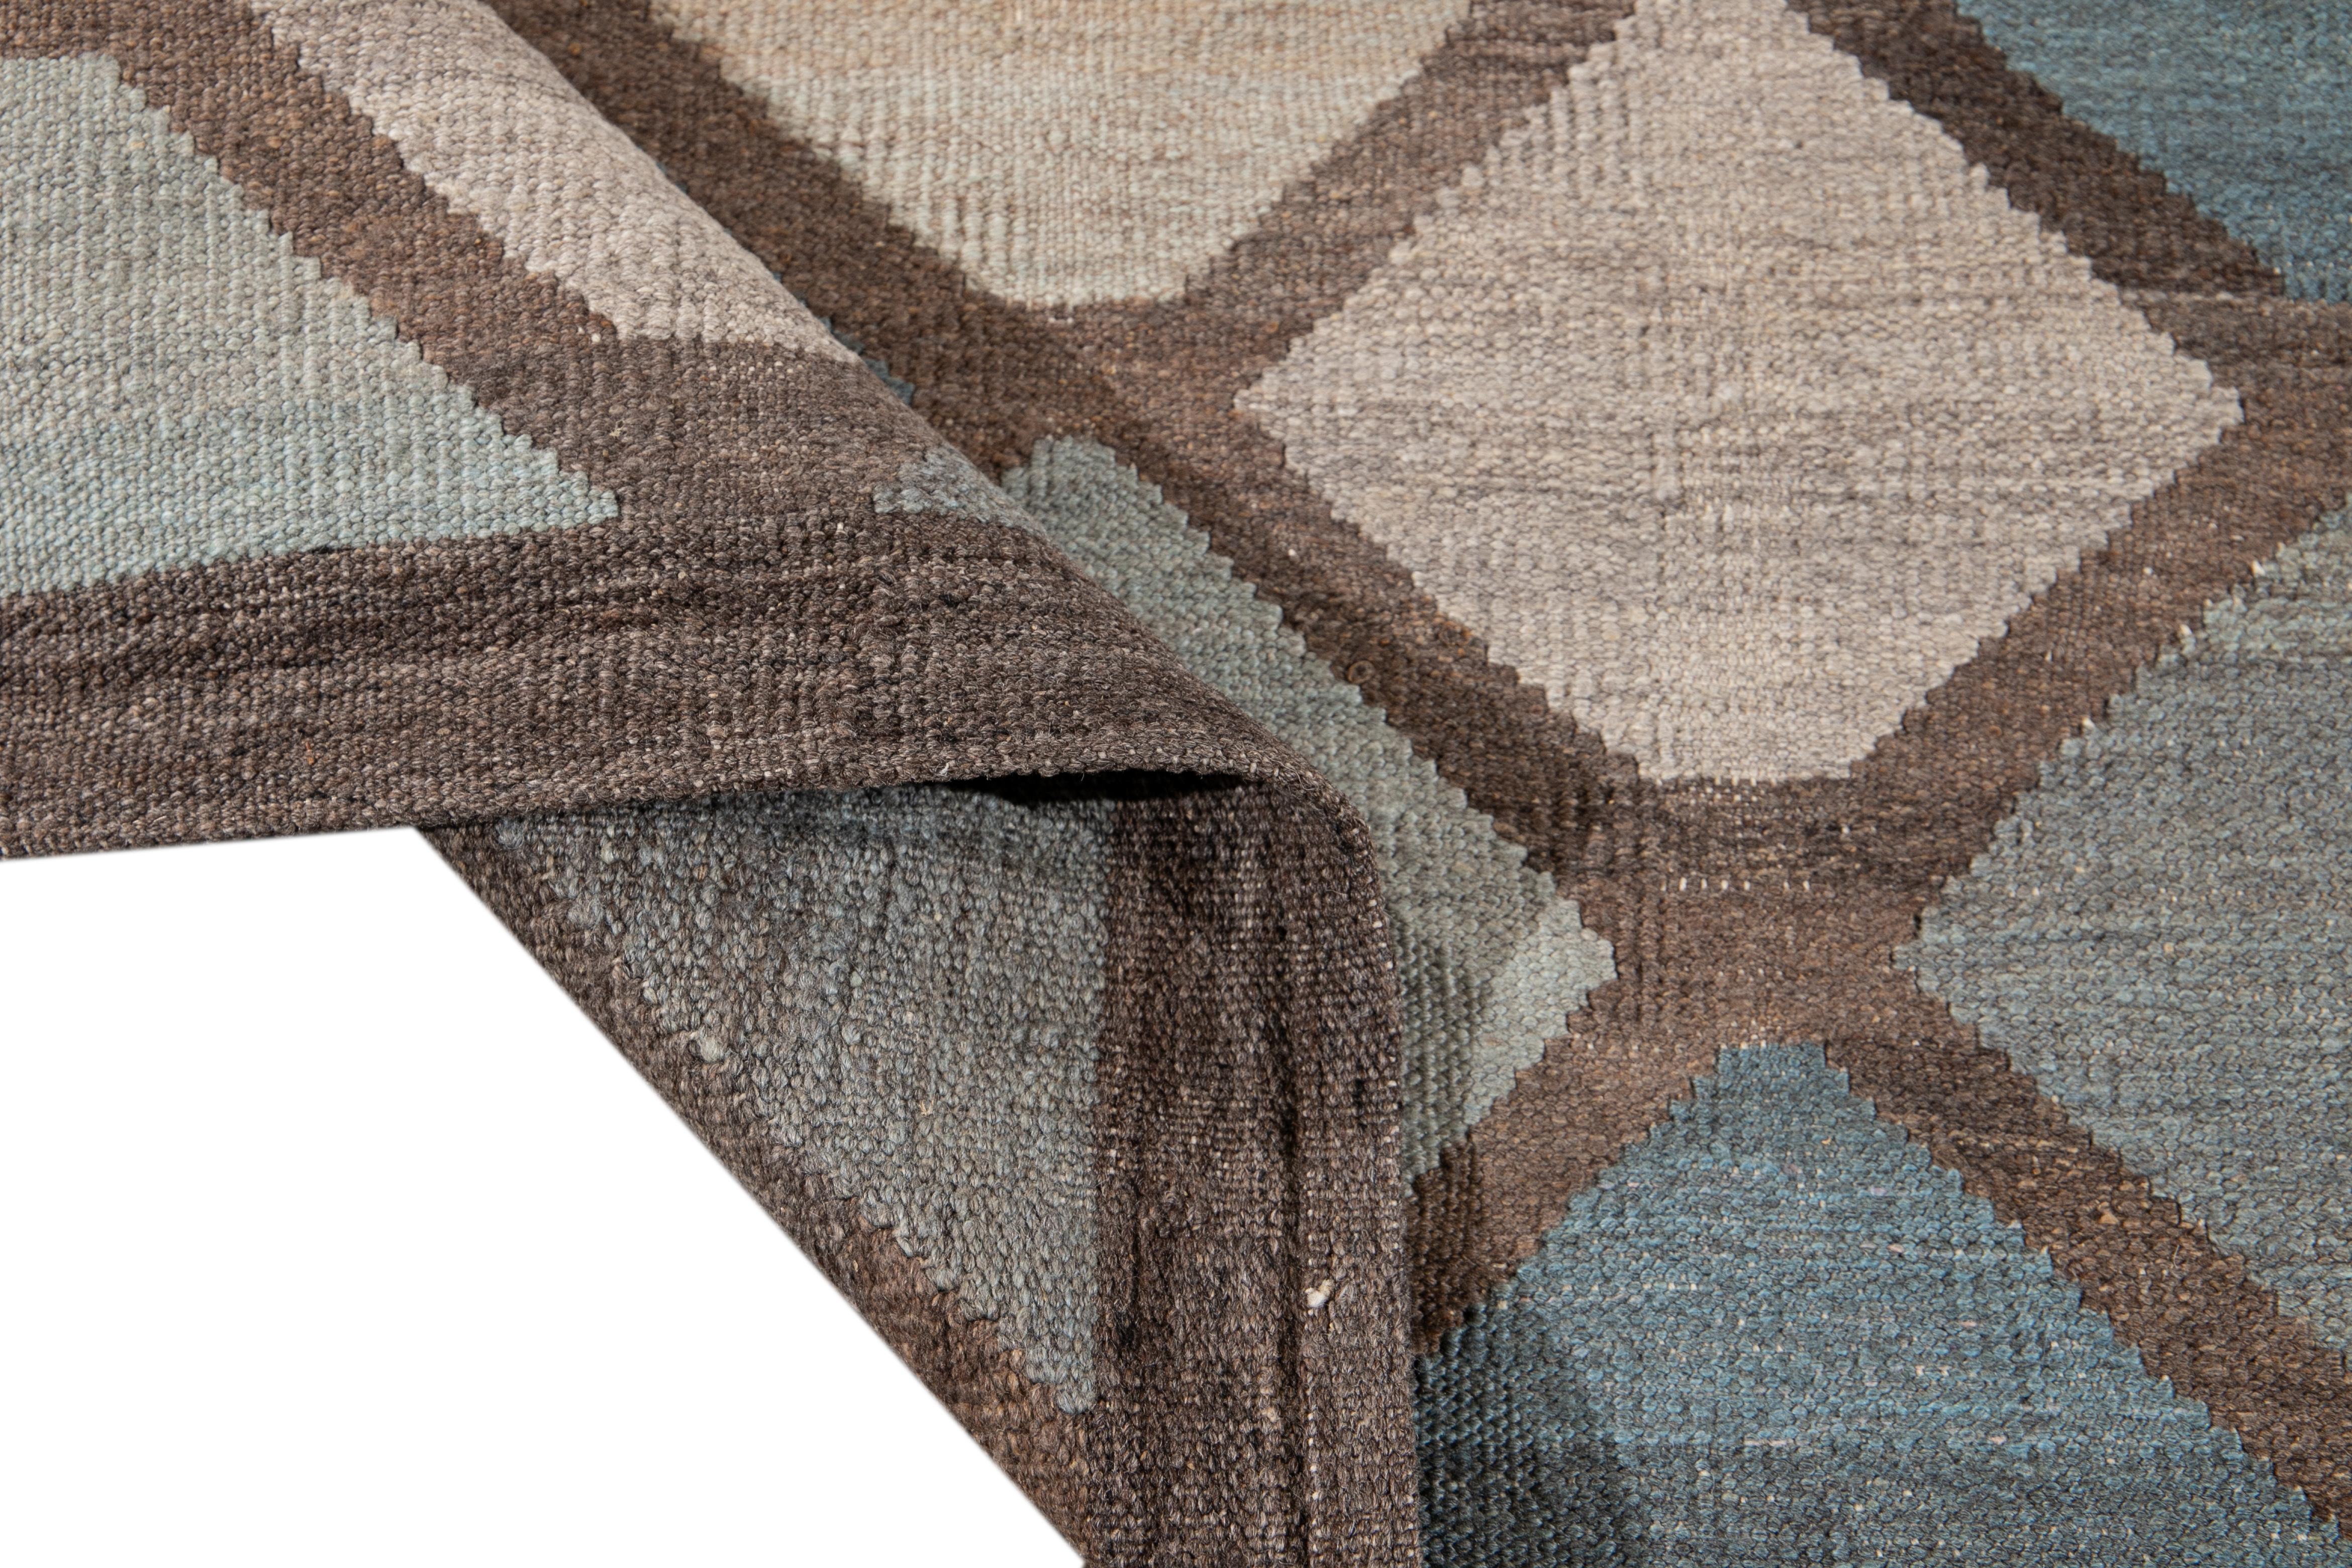 Schöner moderner flachgewebter Kilim-Teppich aus handgefertigter Wolle. Dieser Kilim-Teppich hat ein Feld aus Blau, Braun und Beige in einem wunderschönen geometrischen Muster.

Dieser Teppich misst: 8'1